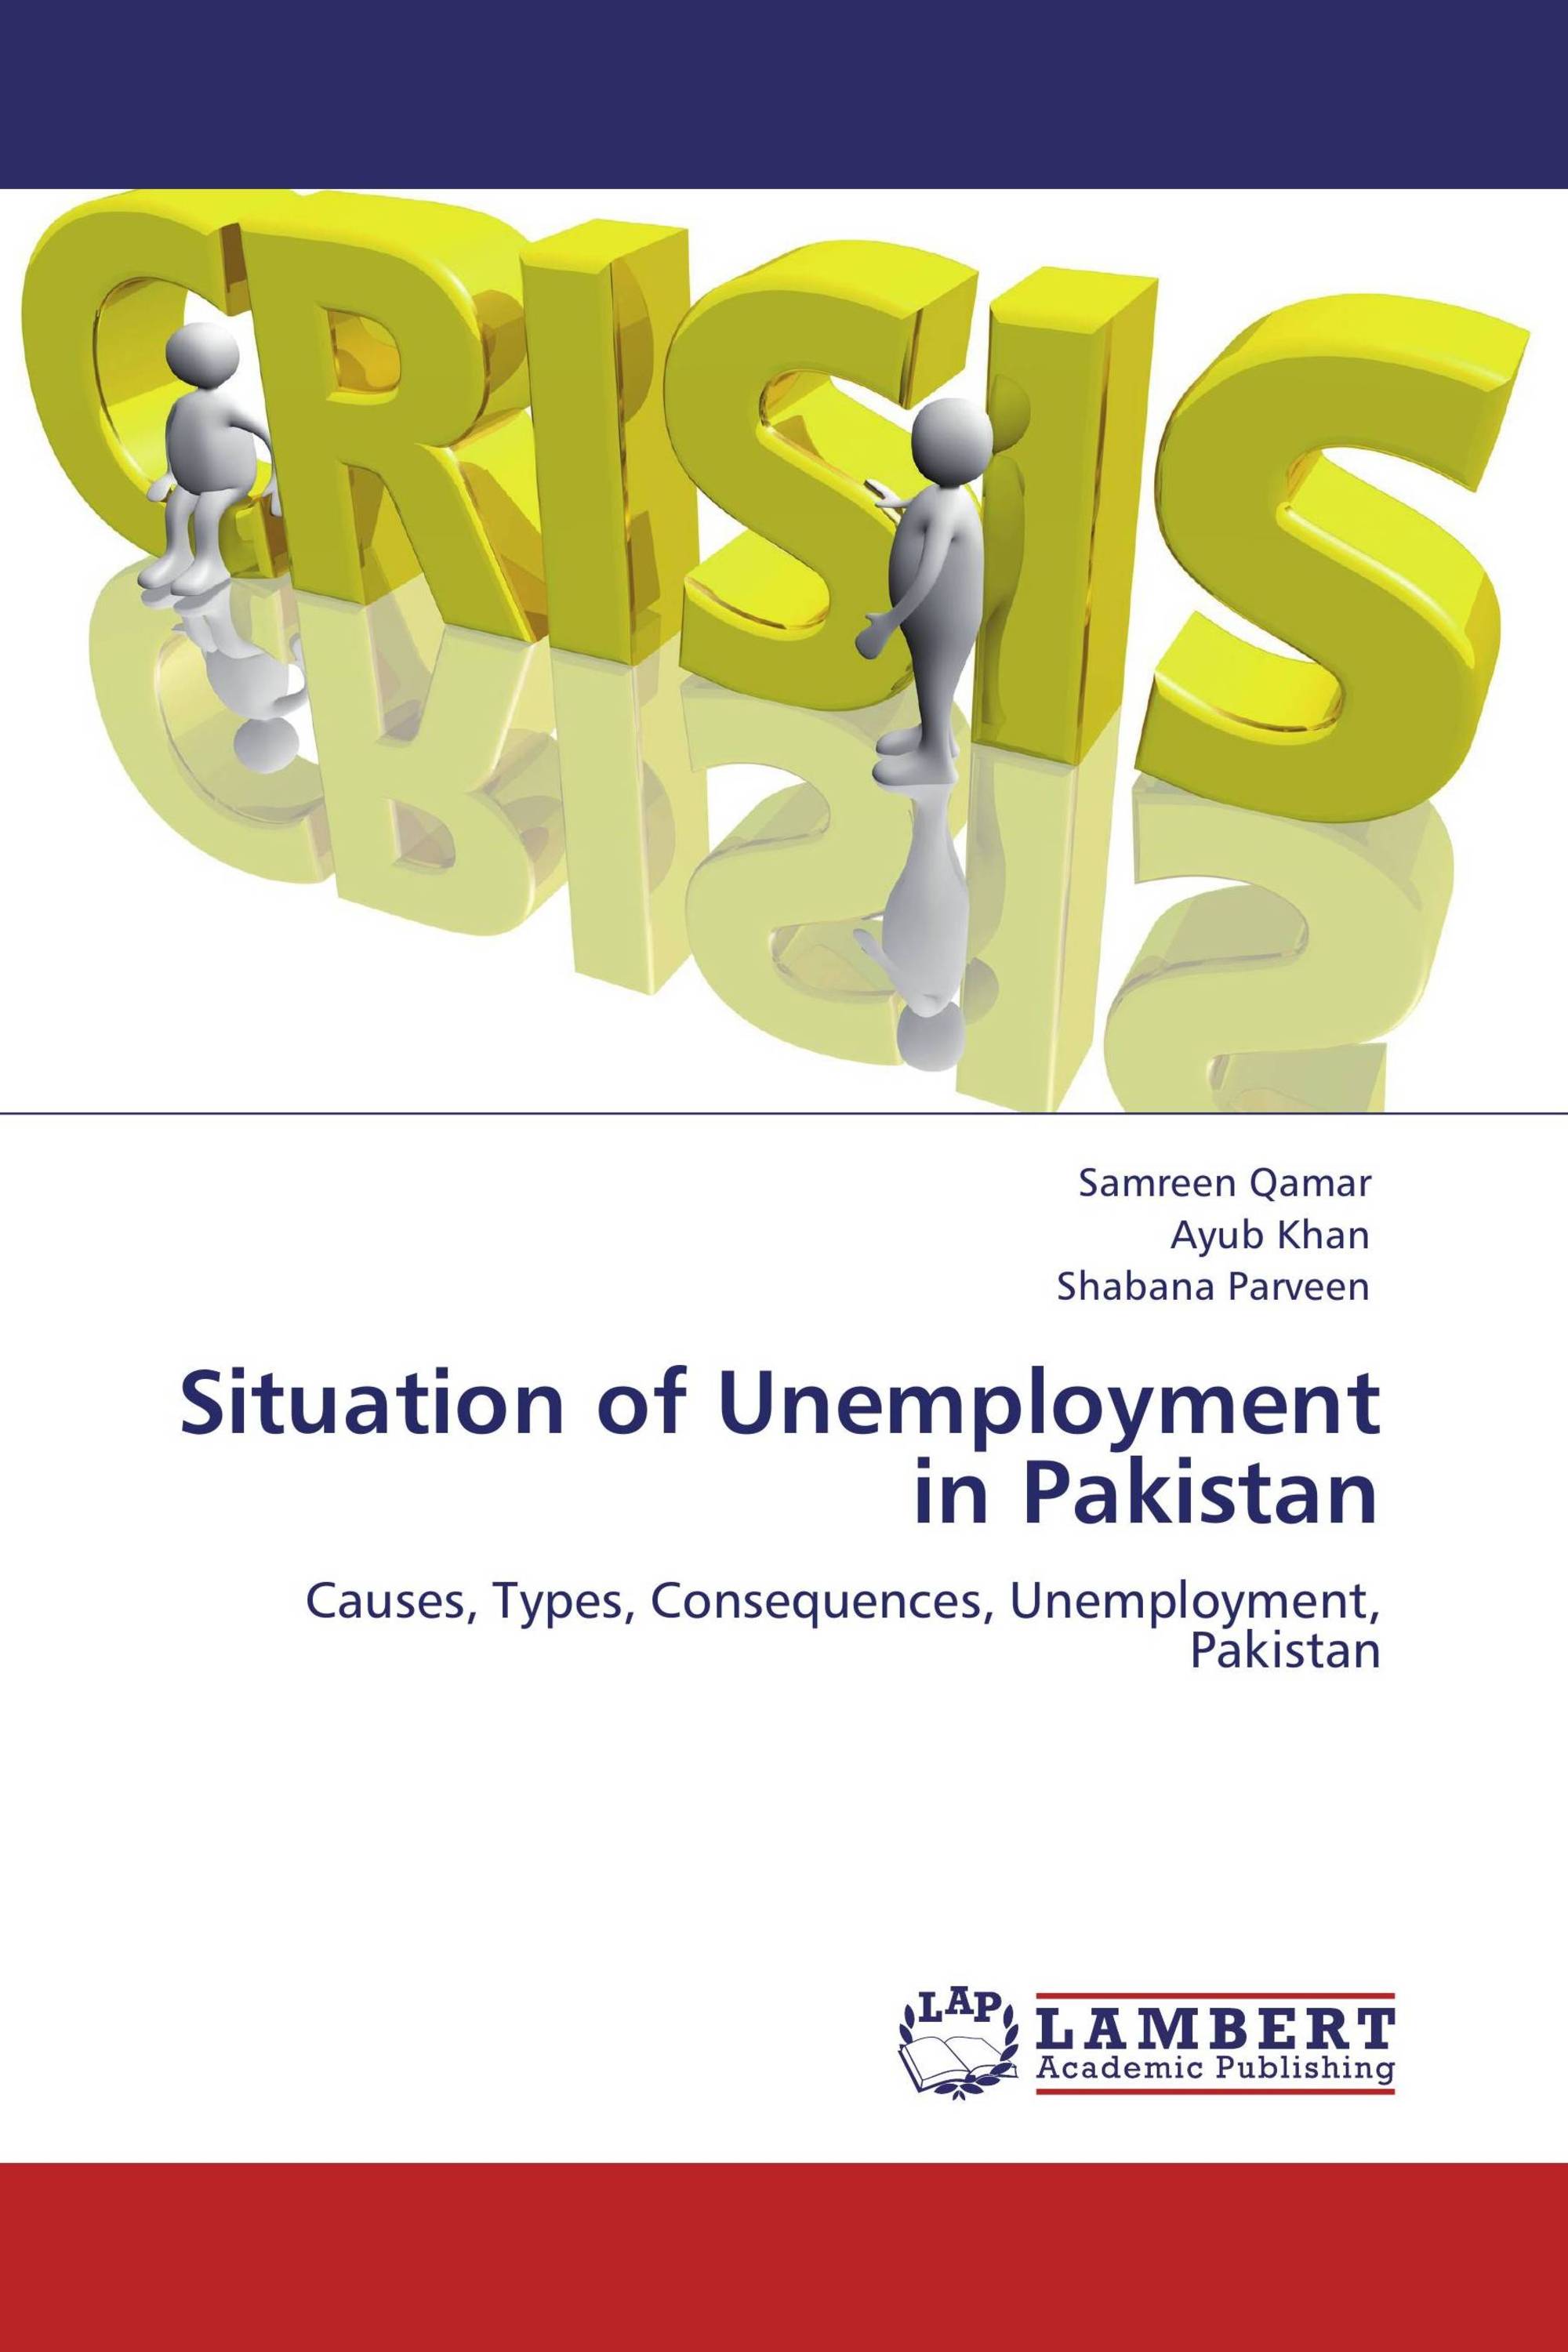 presentation on unemployment in pakistan